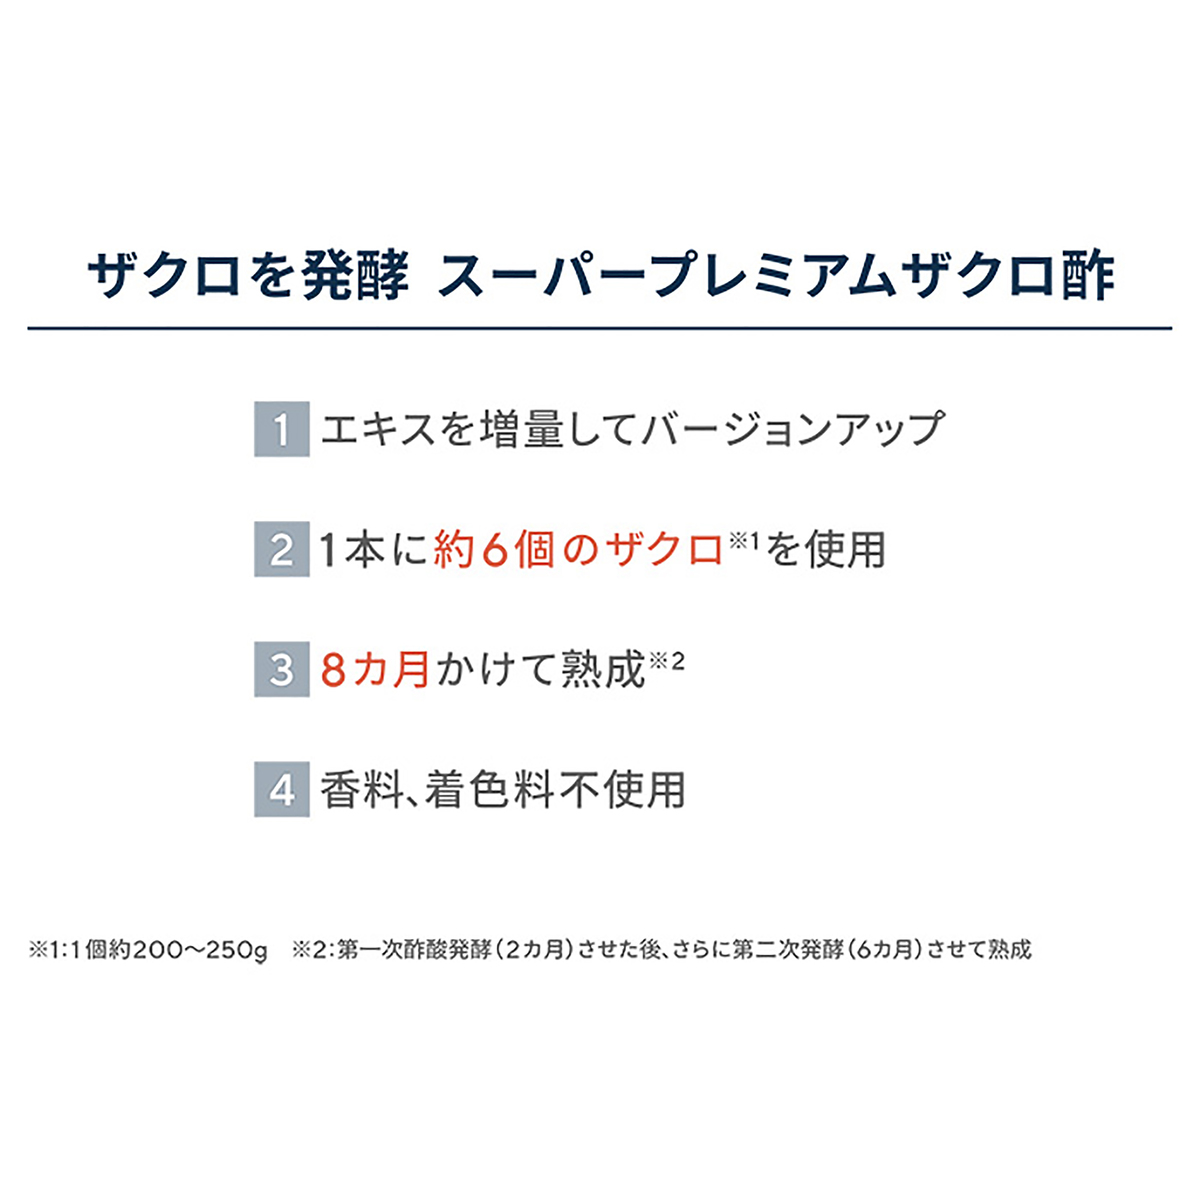 プロが選んだスーパープレミアムザクロ酢3本セット - QVC.jp